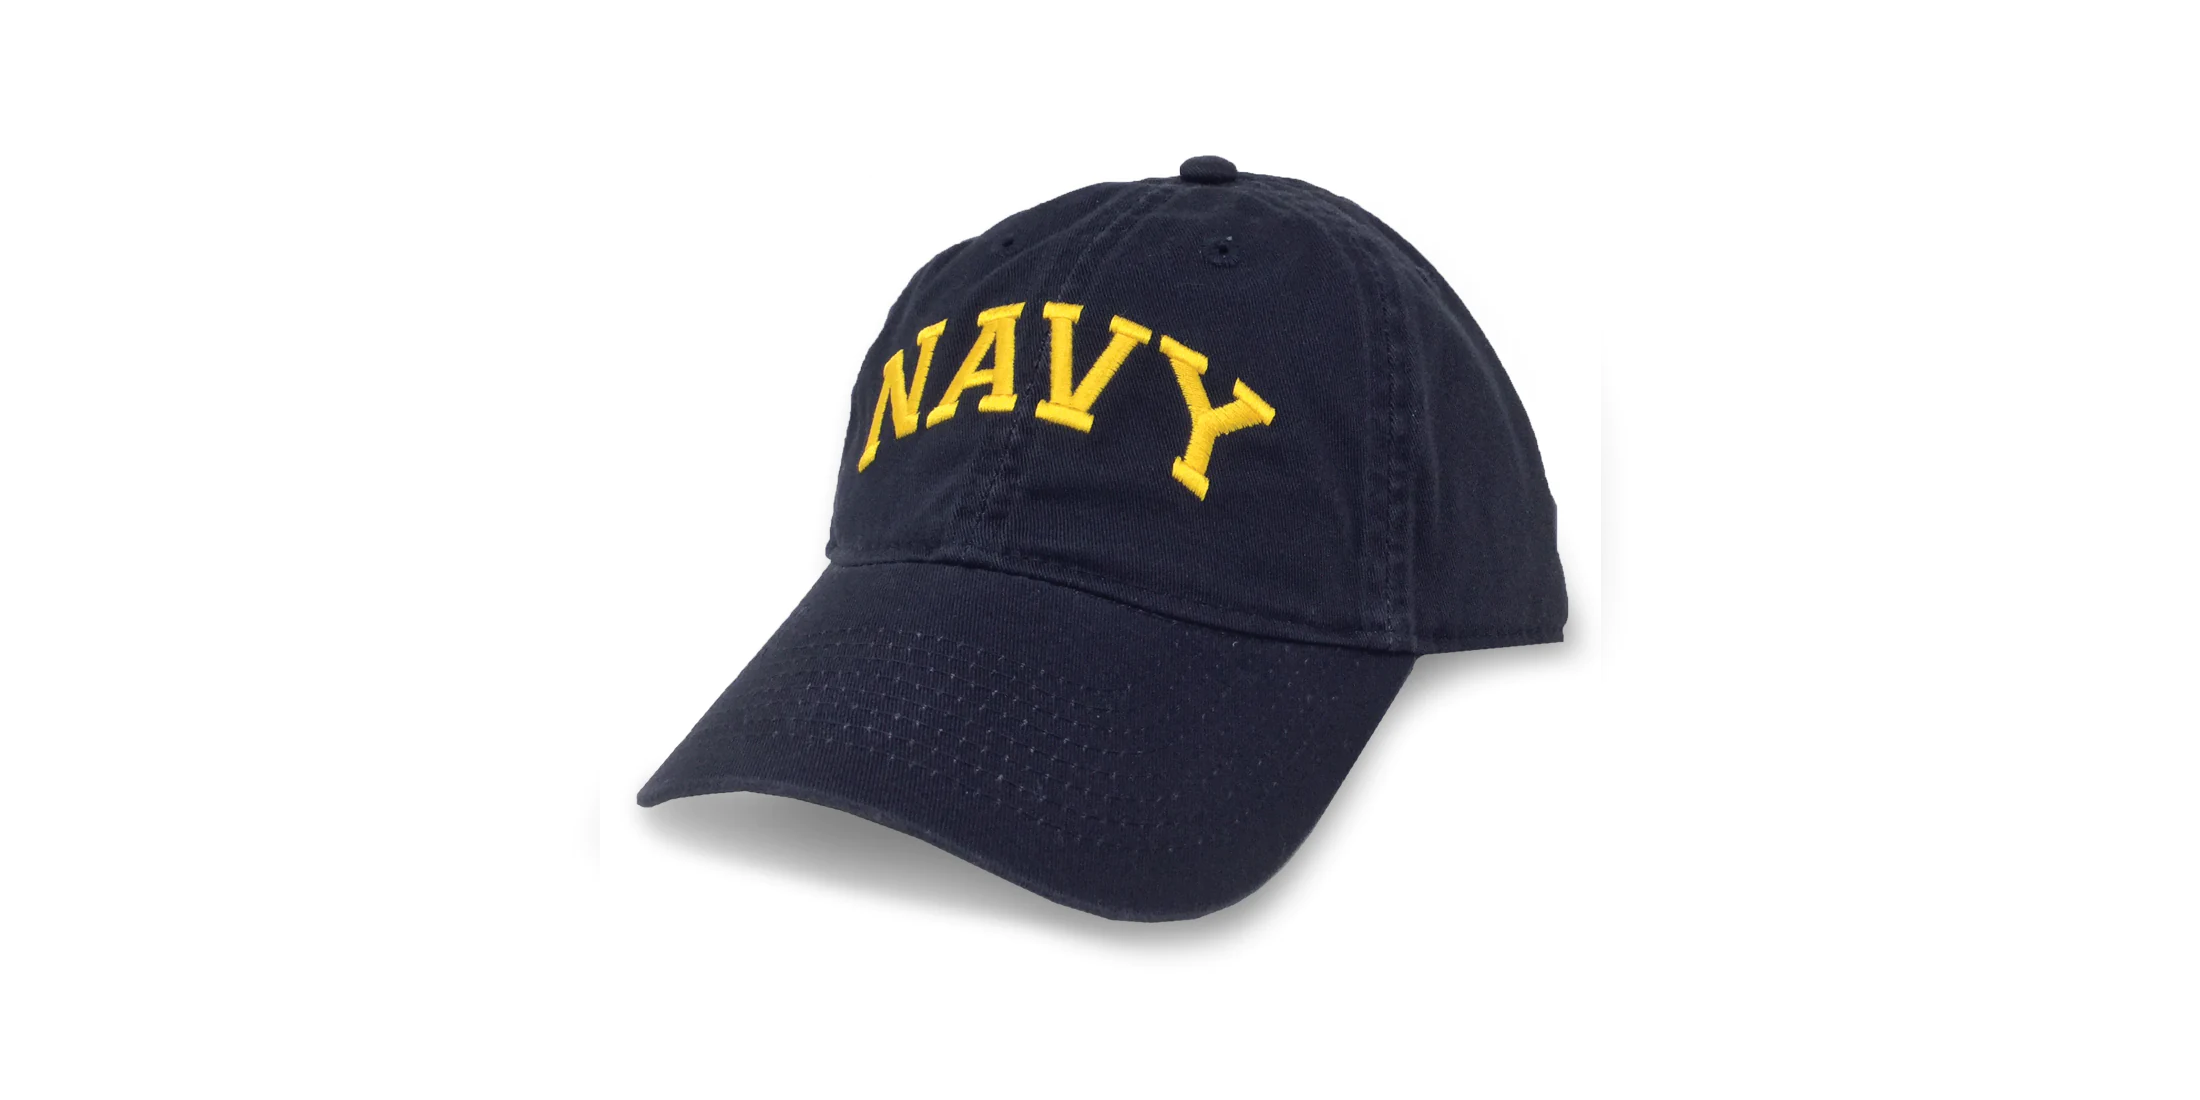 Navy Men's